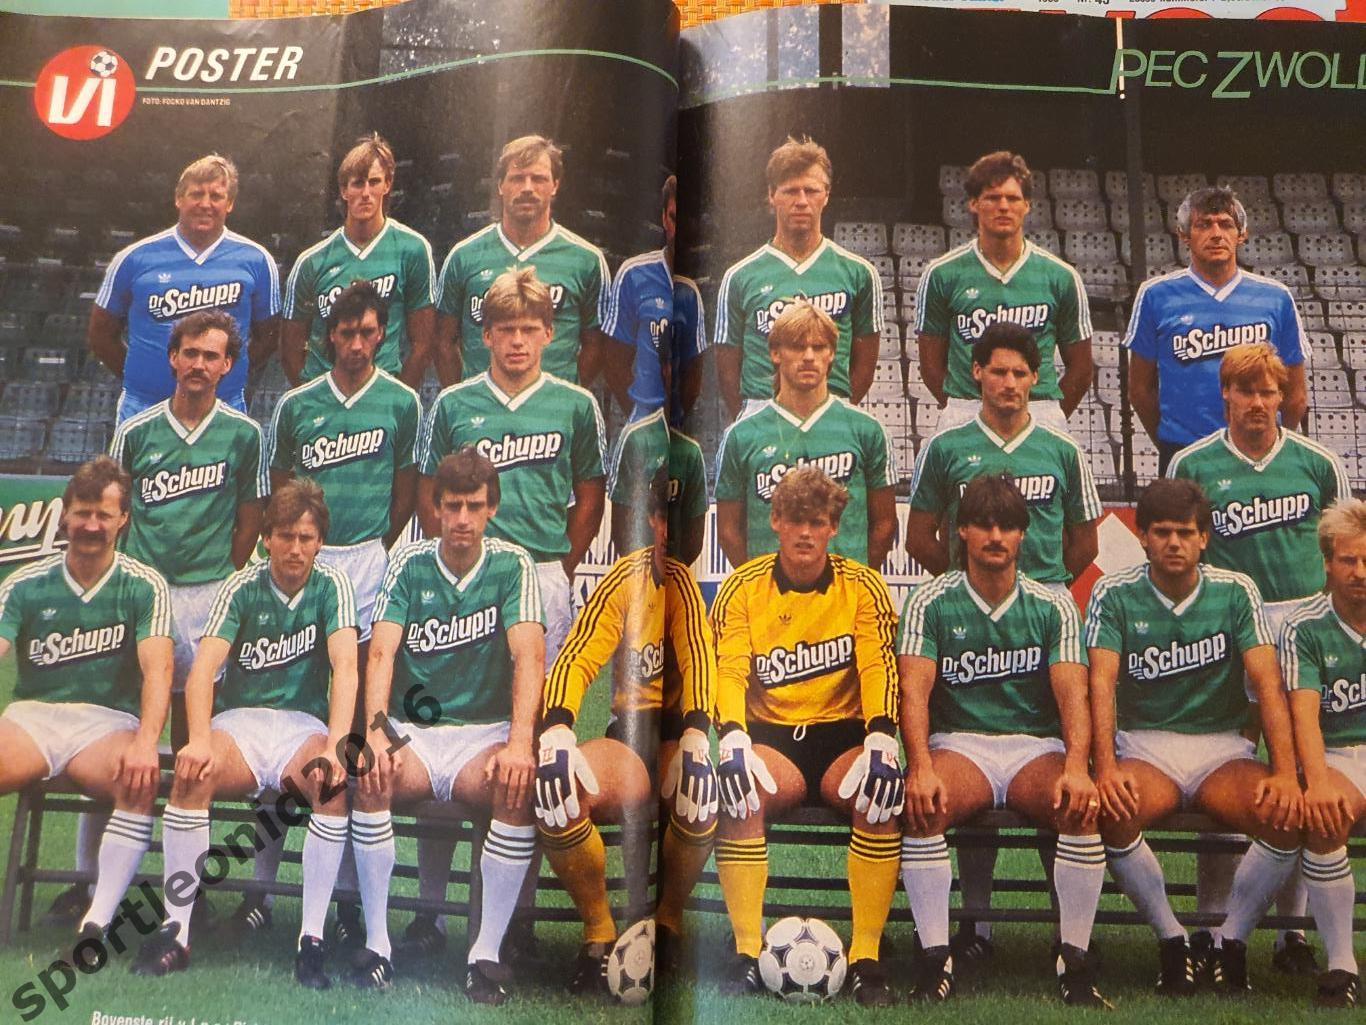 Voetbal International 1985 года выпуска.14 журналов.1 1